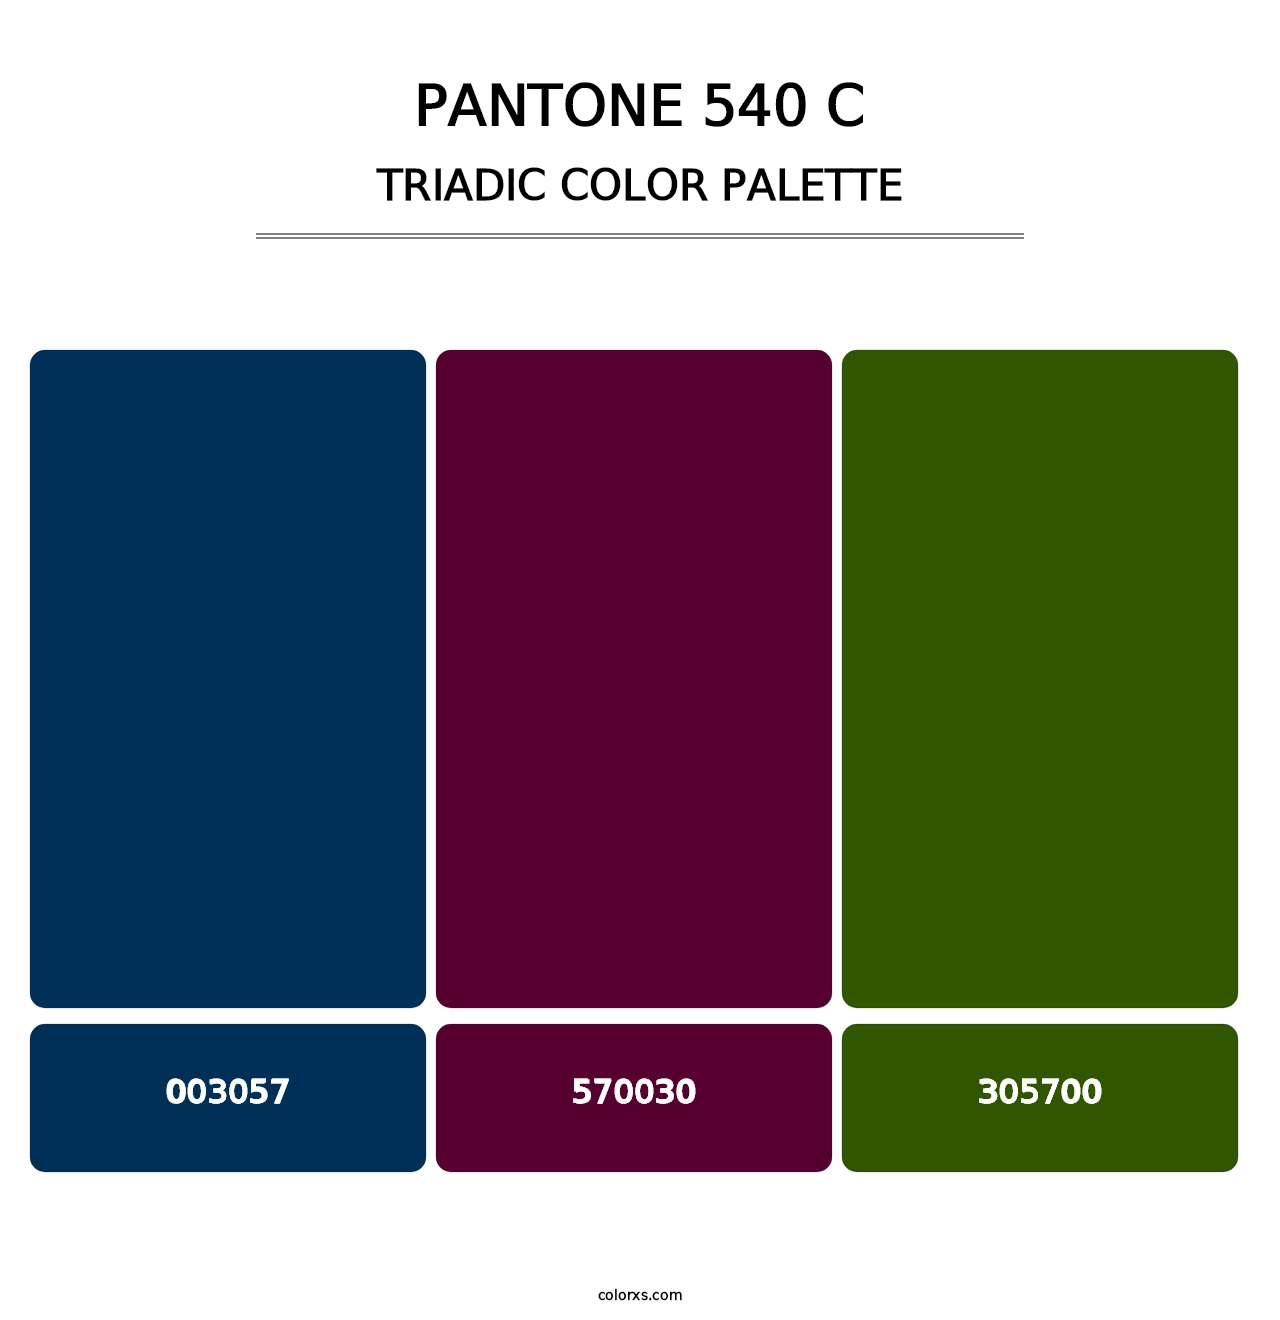 PANTONE 540 C - Triadic Color Palette